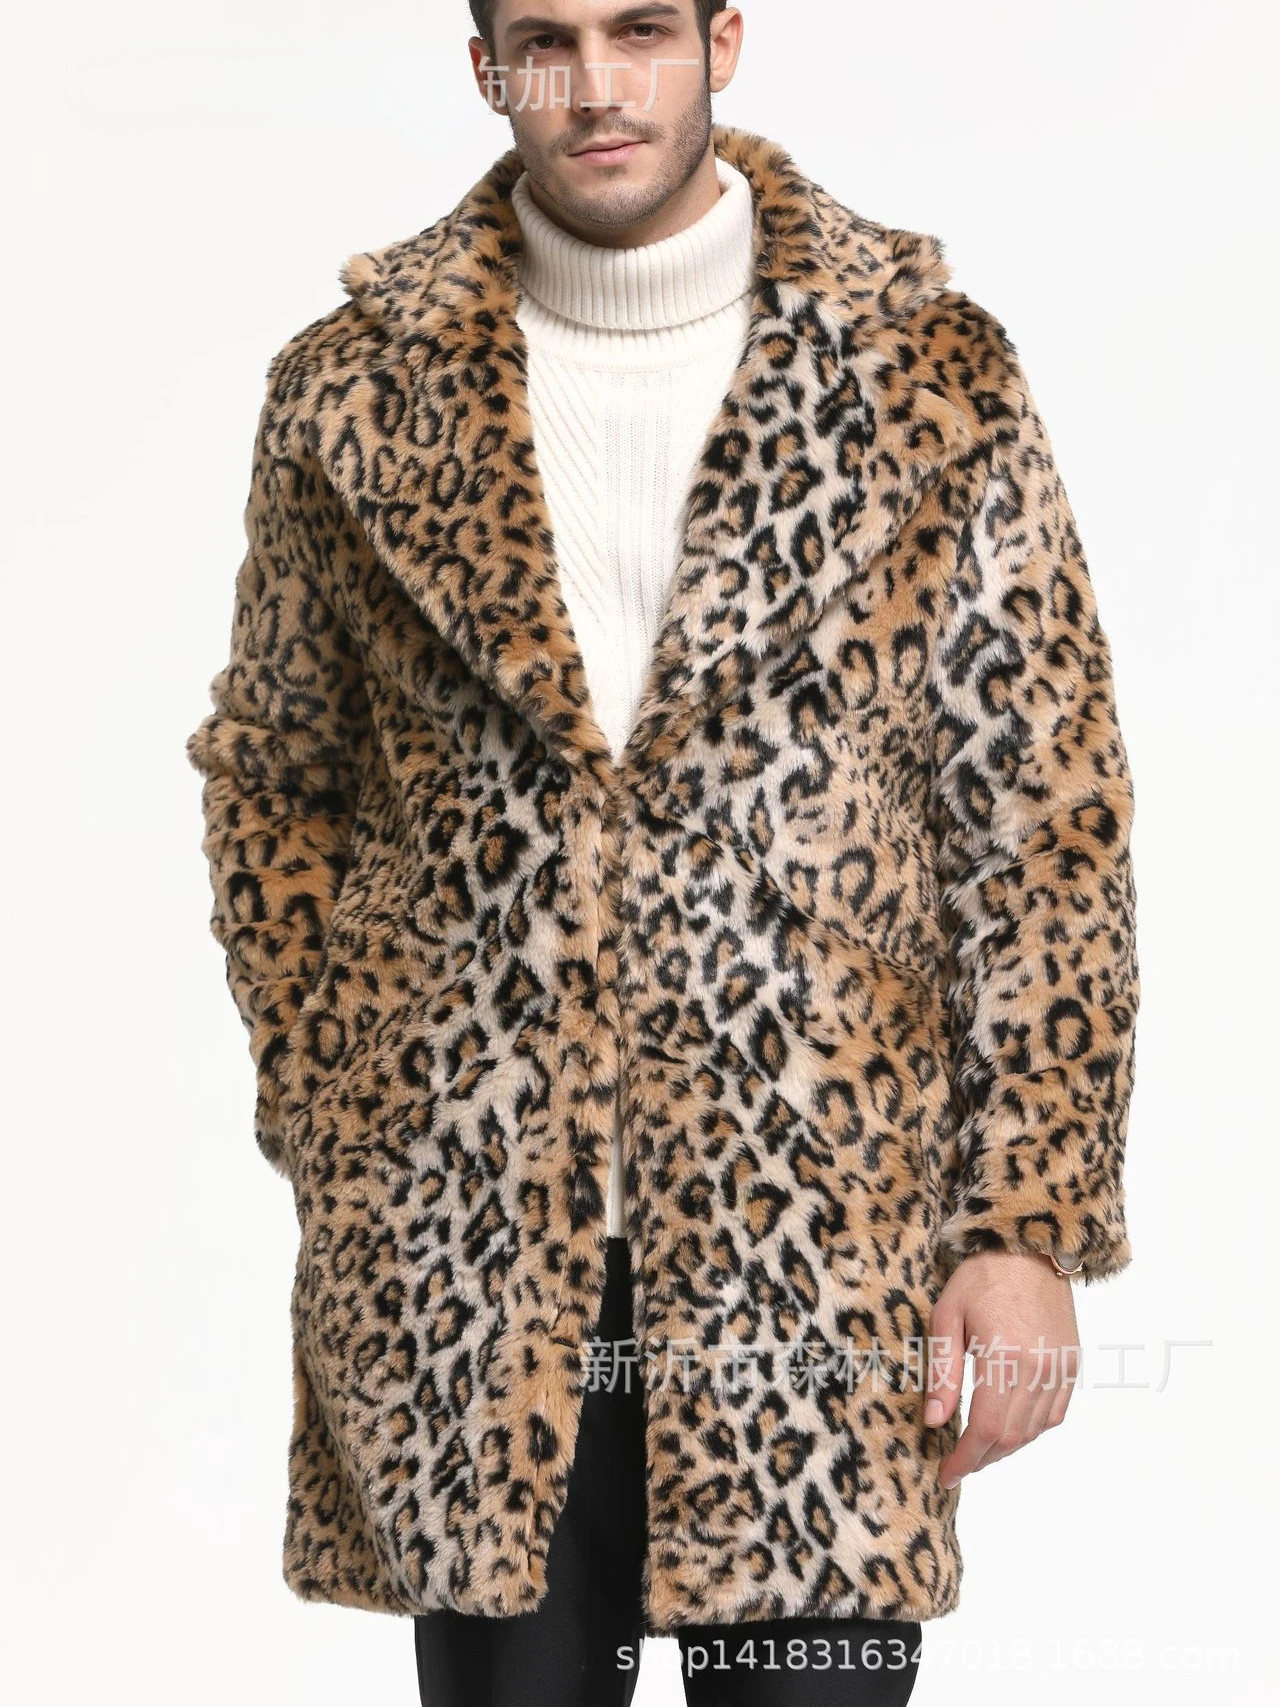 Warm Winter Outerwear Autumn Winter Men's Clothing Faux Fur Coat   Jacquard Leopard Print Large Lapel Top Long Coat